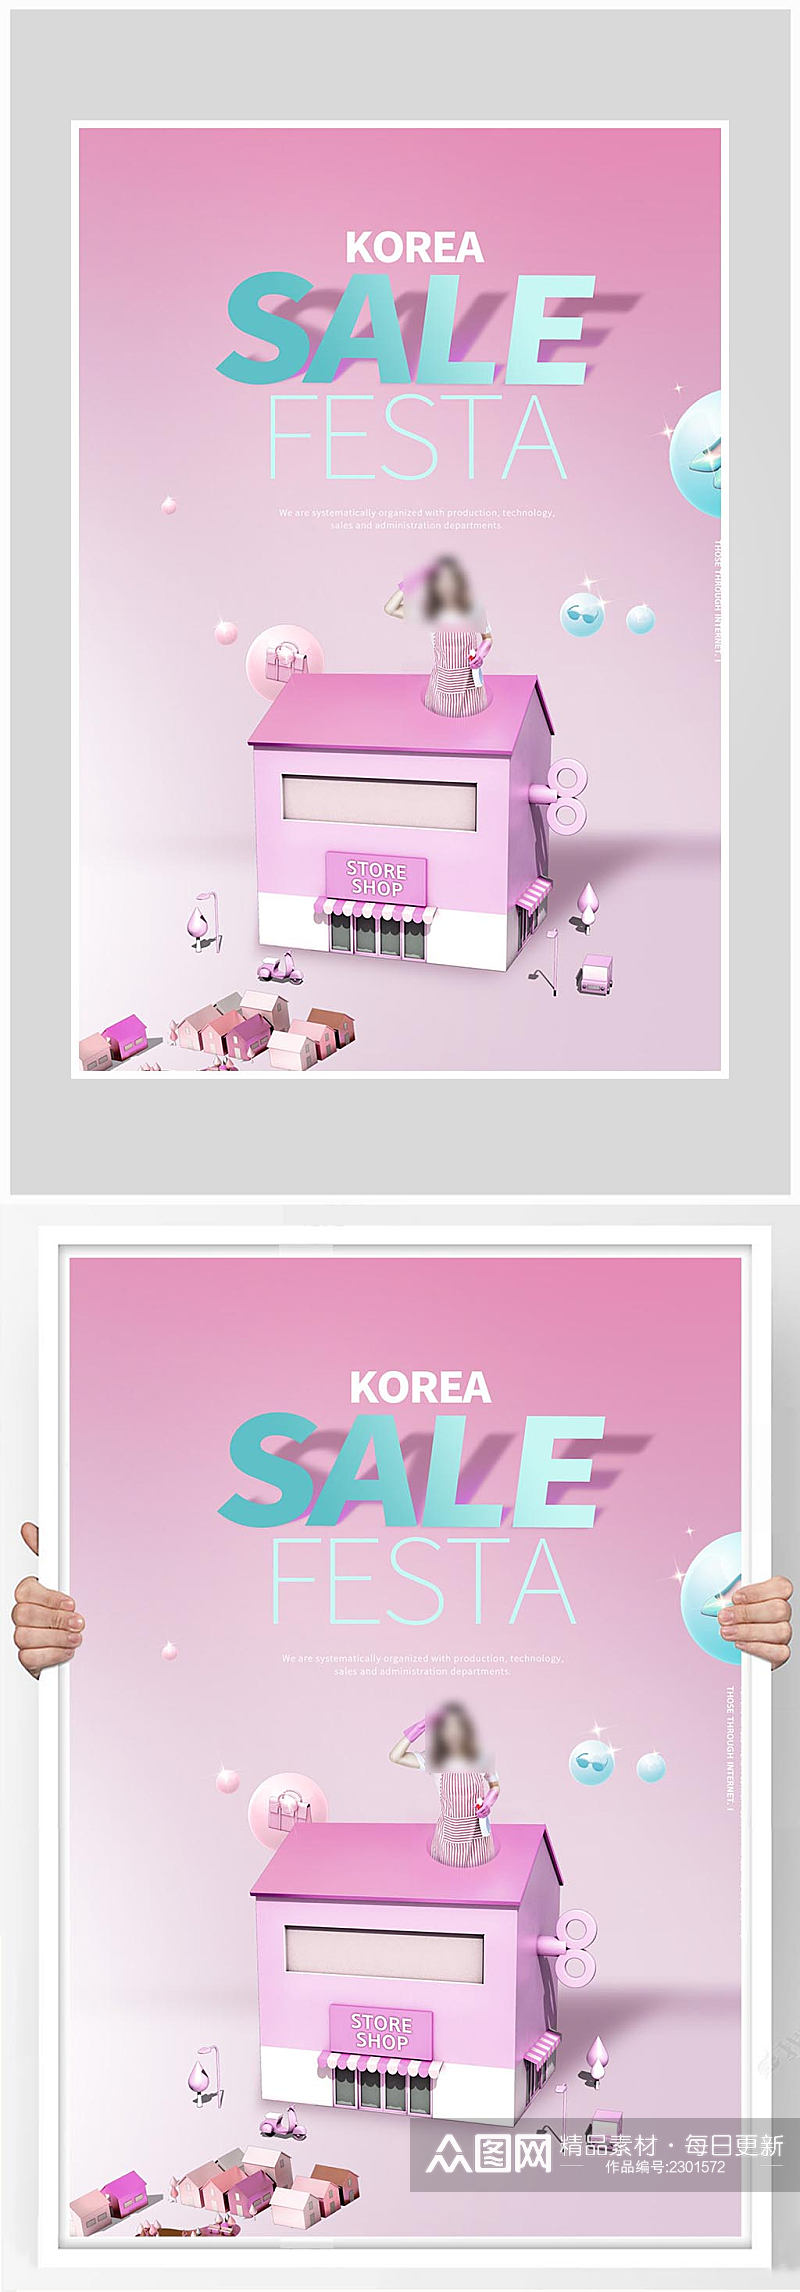 创意质感唯美粉色促销海报设计素材